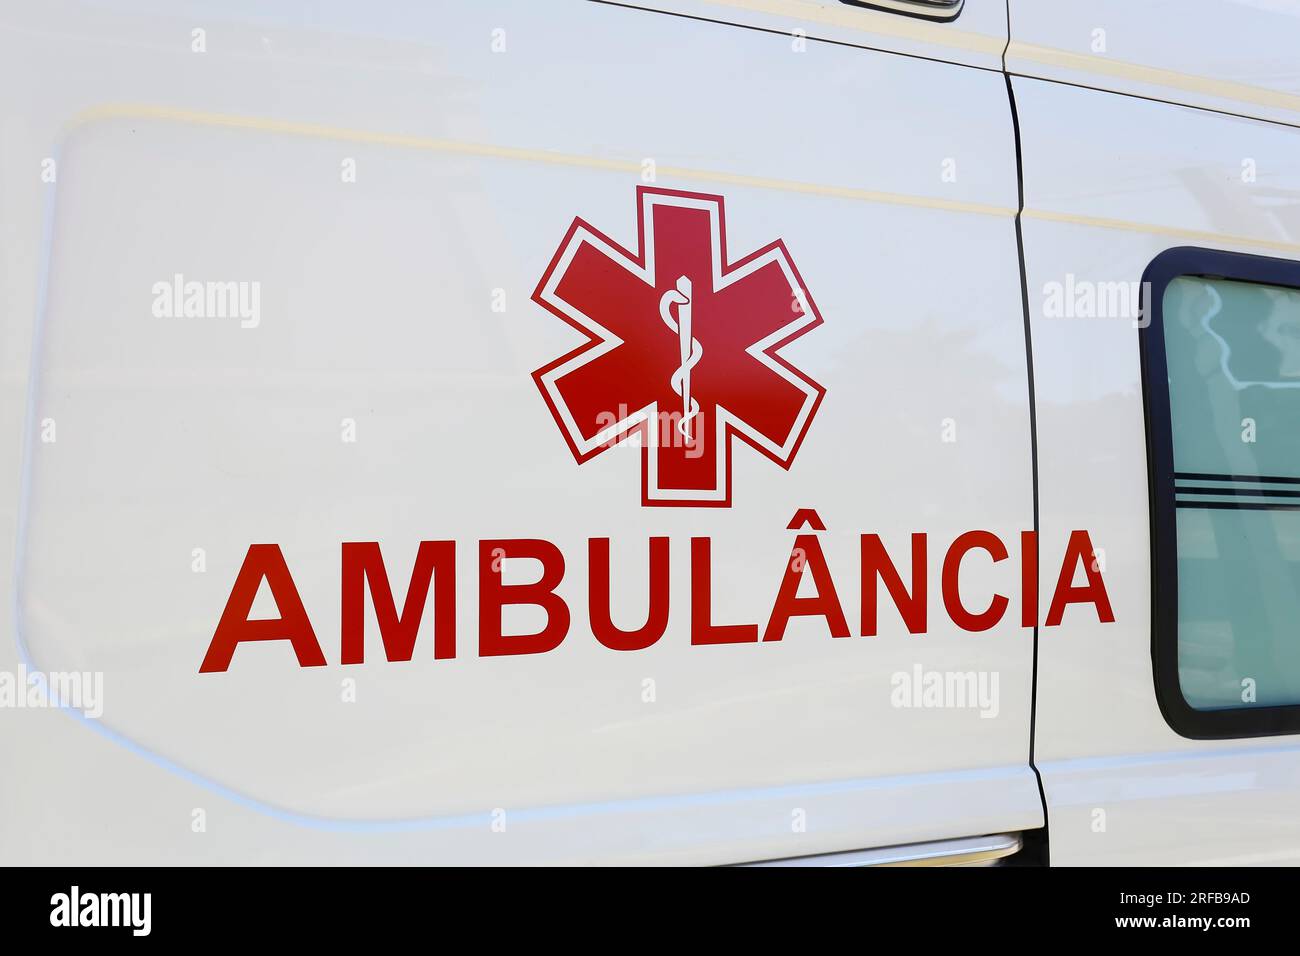 descrizione dettaglio dell'ambulanza generica, con lettere rosse in portoghese: ambulancia Foto Stock